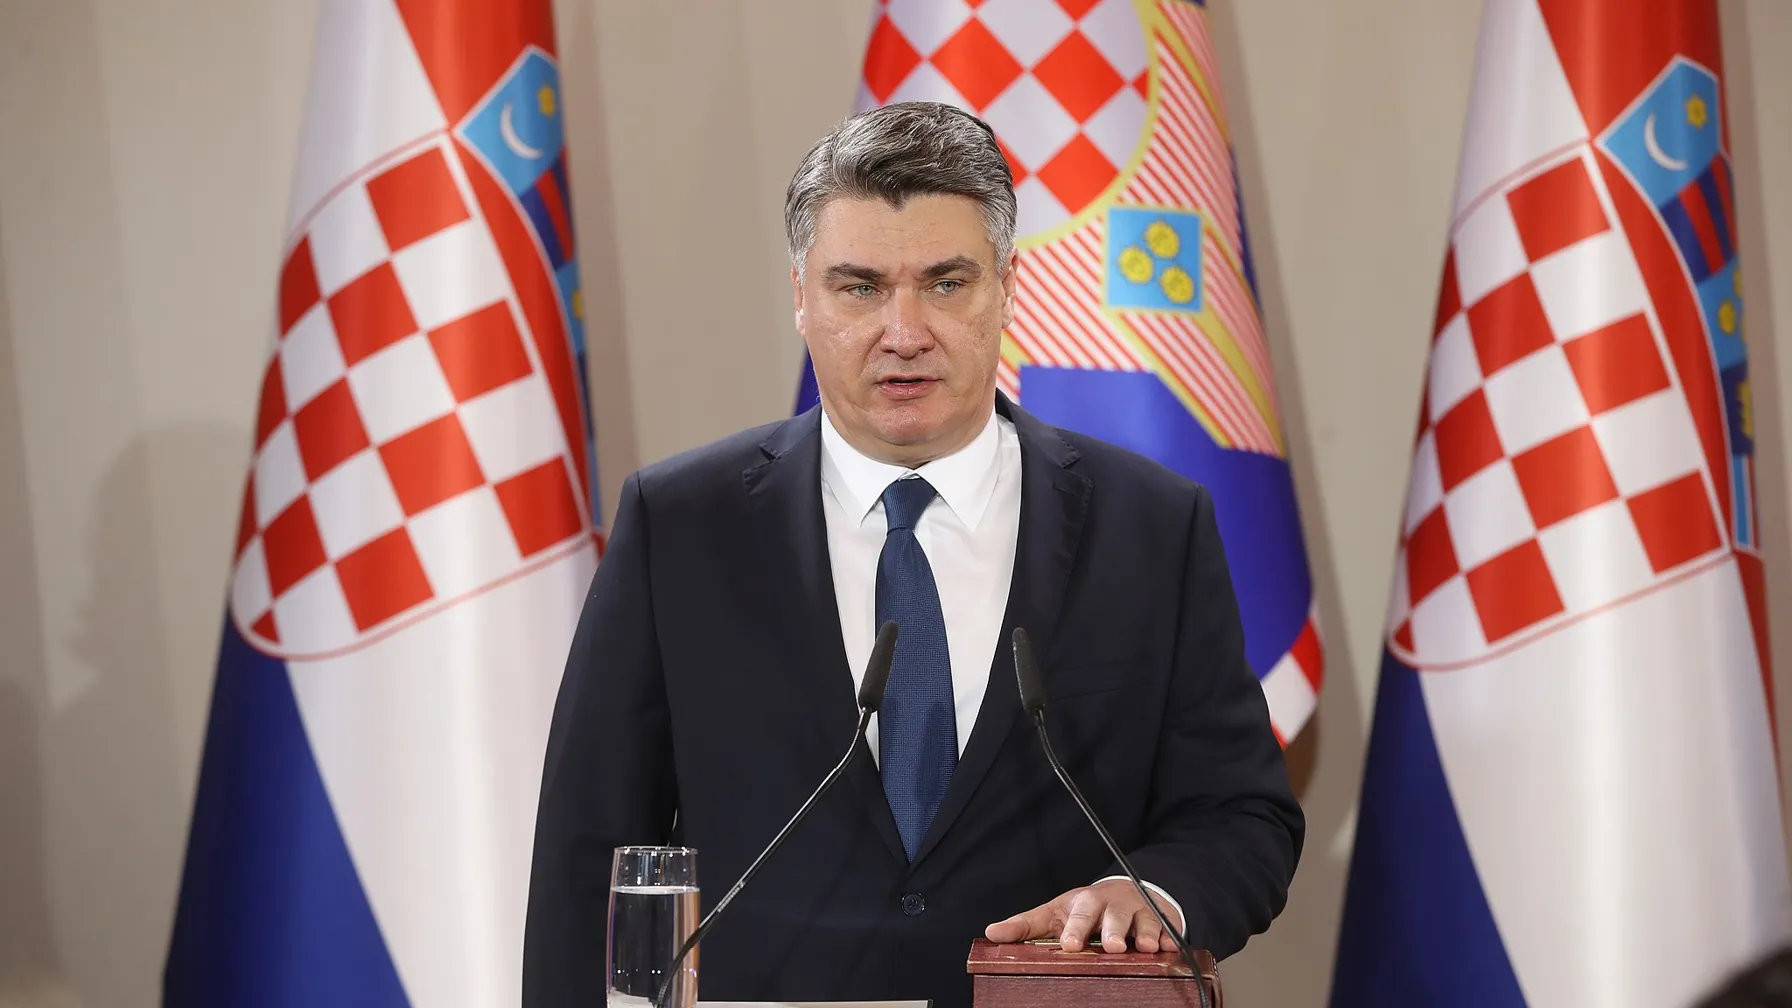 Ustavno sodišče: Milanović ne more biti kandidat za premierja, dokler je predsednik